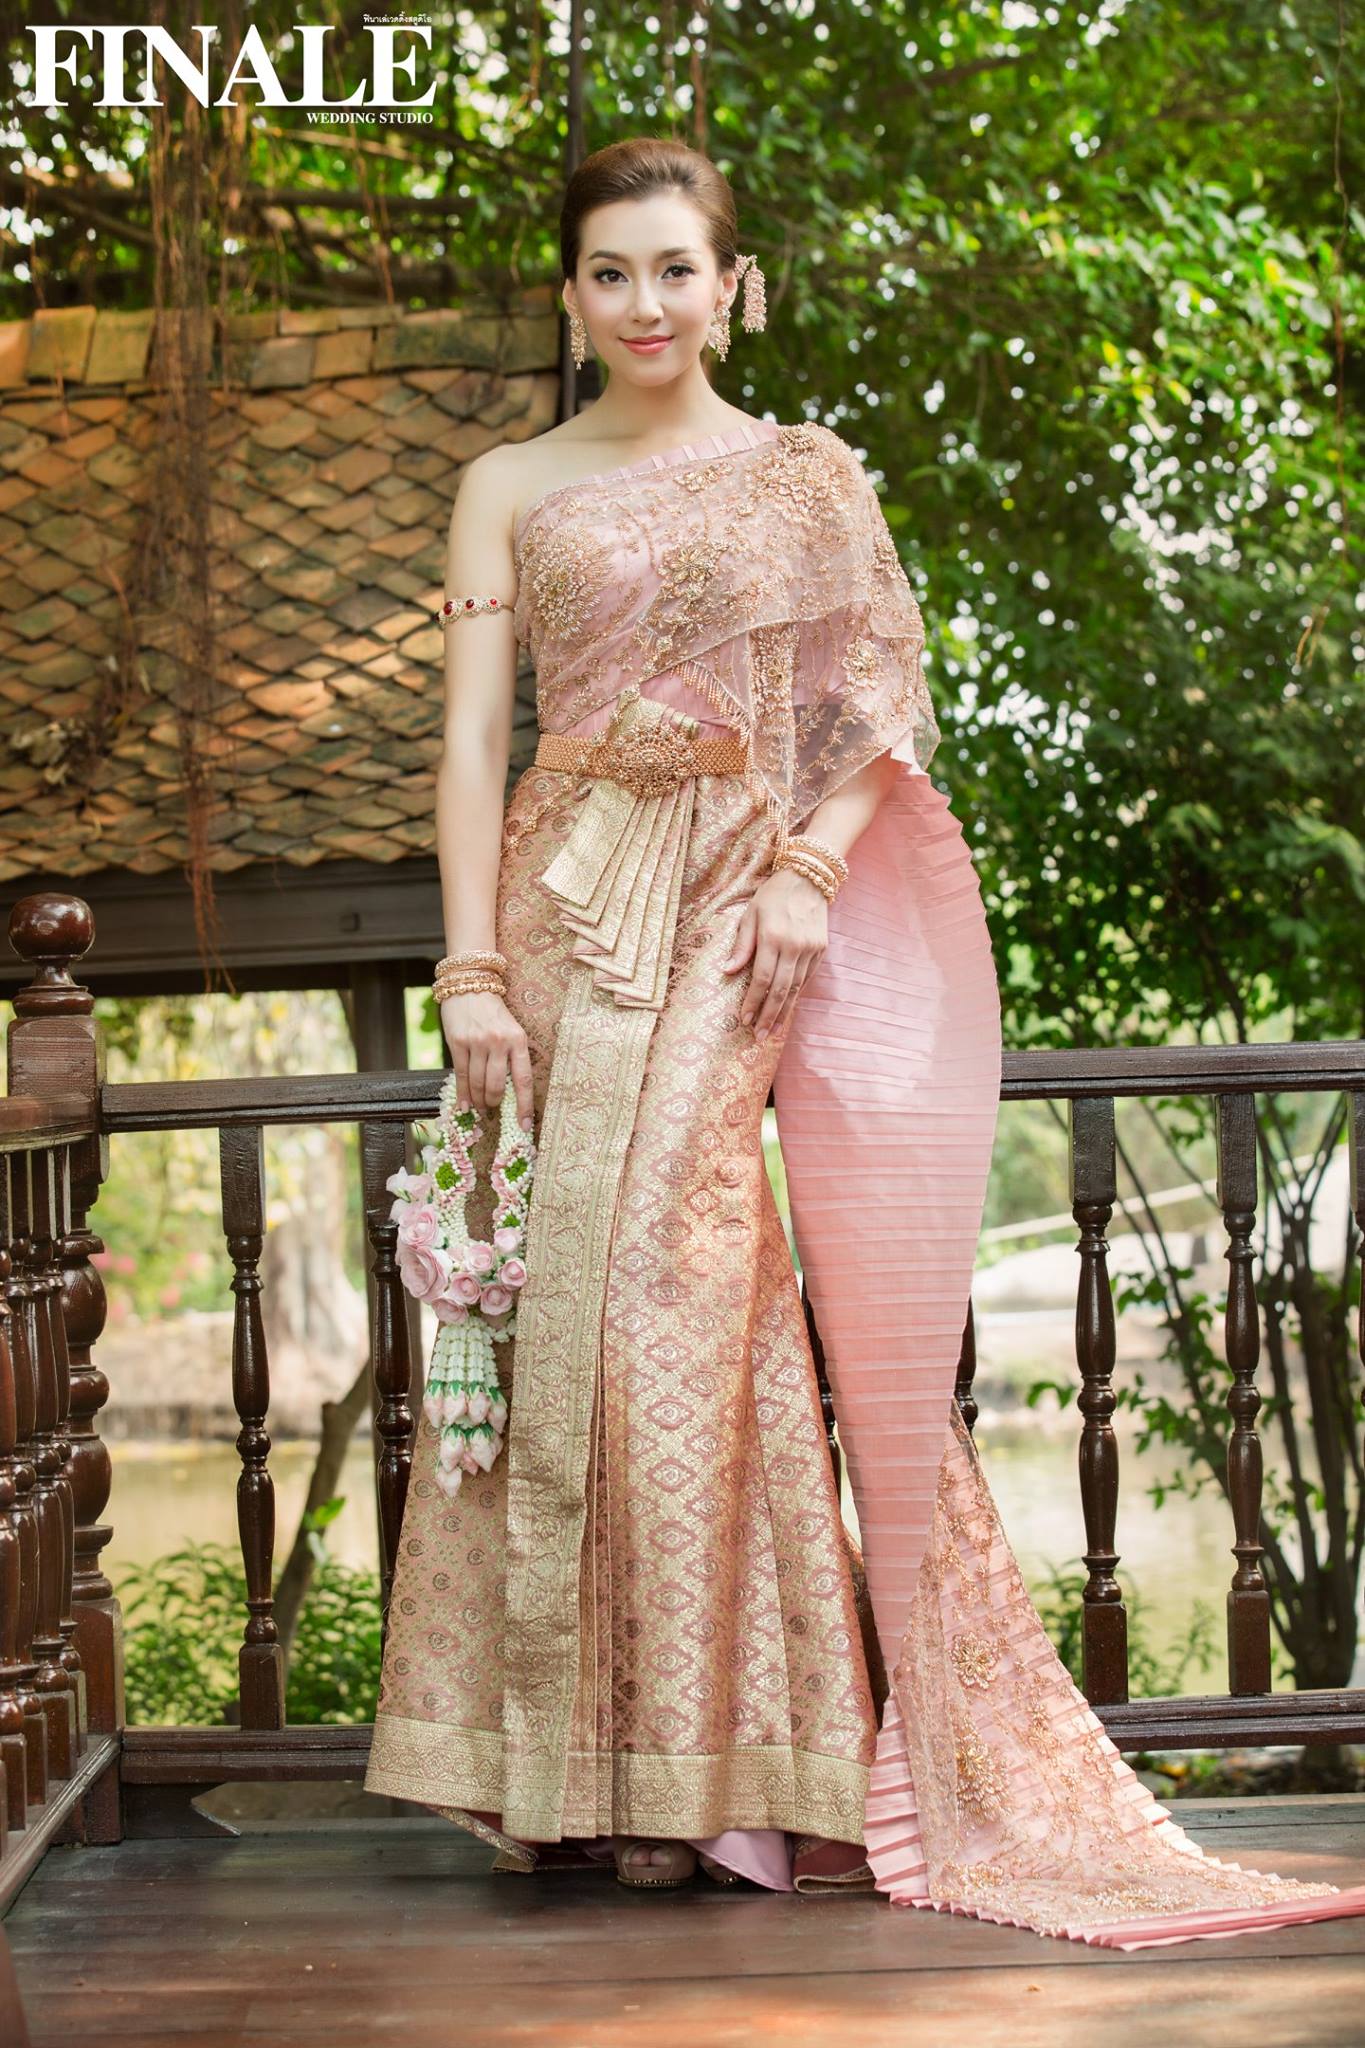 Vẻ đẹp ẩn chứa trong trang phục truyền thống Thái Lan - iVIVU.com